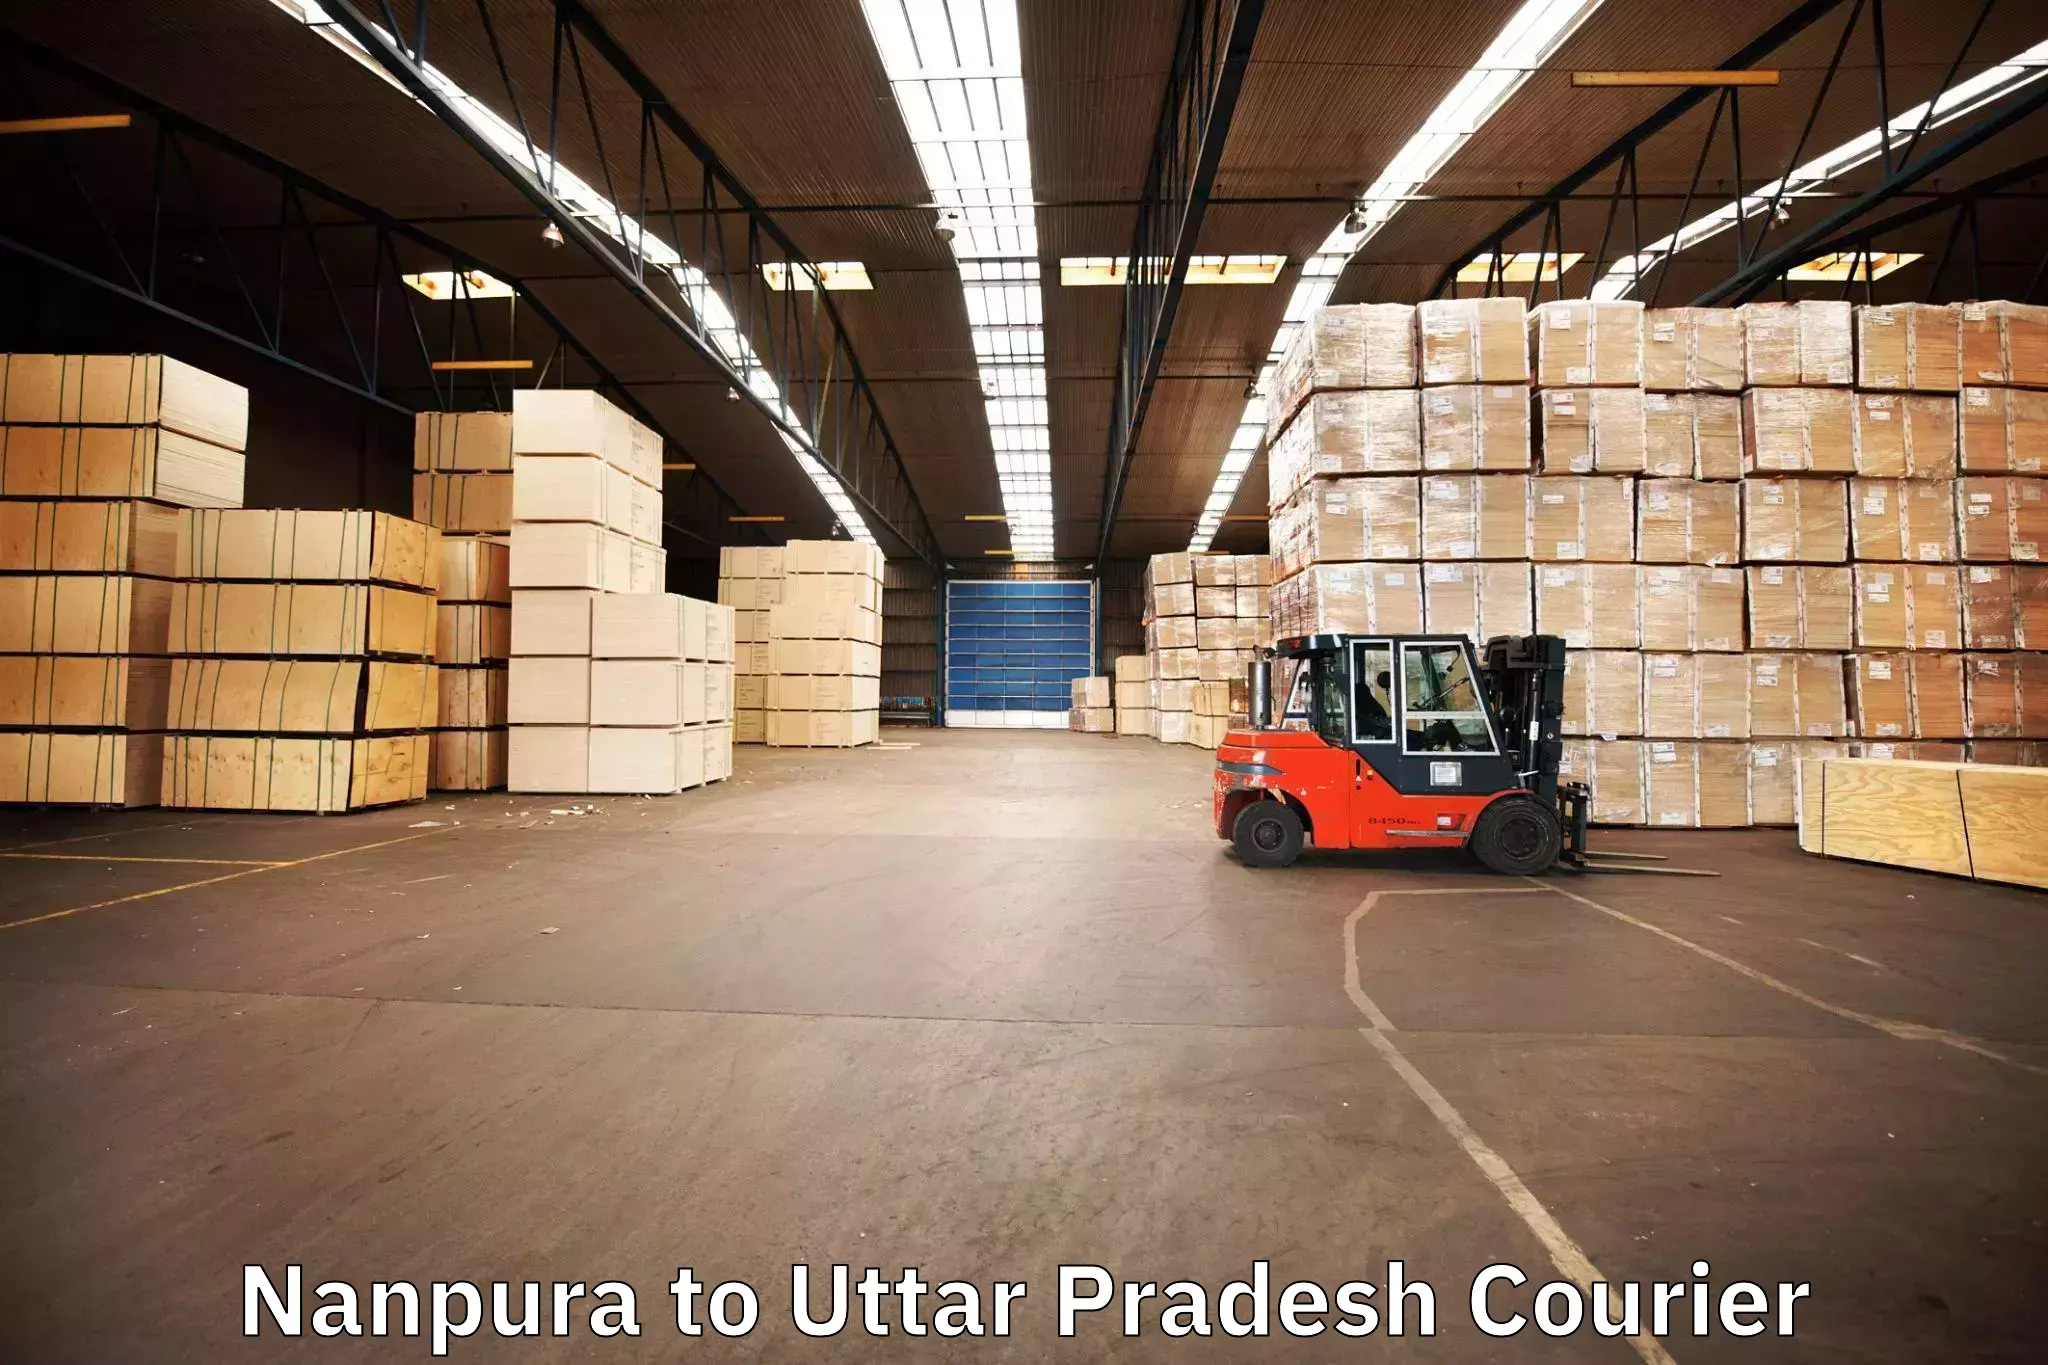 Furniture moving plans Nanpura to Kasganj